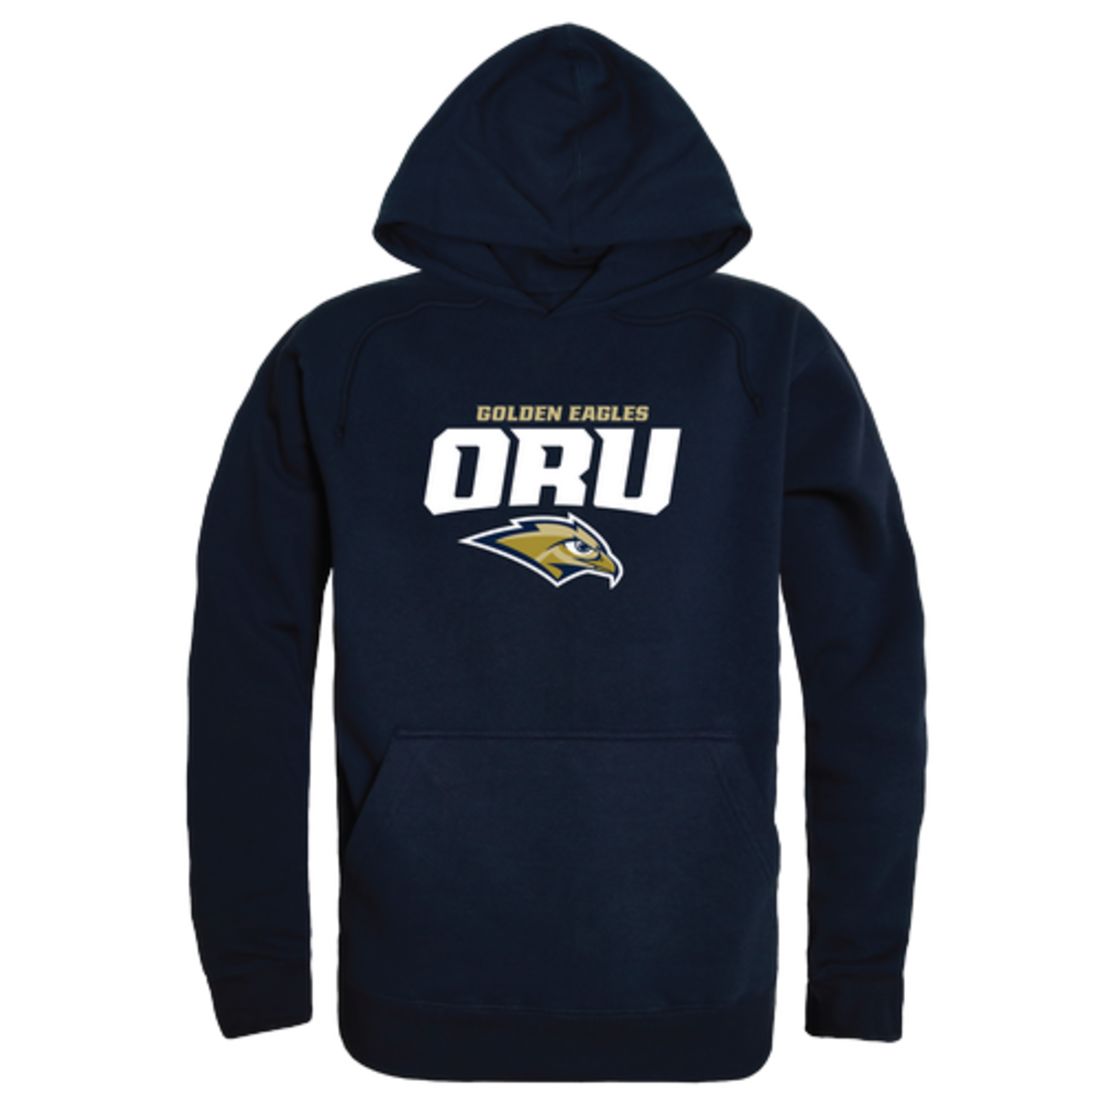 Oral-Roberts-University-Golden-Eagles-Freshman-Fleece-Hoodie-Sweatshirts